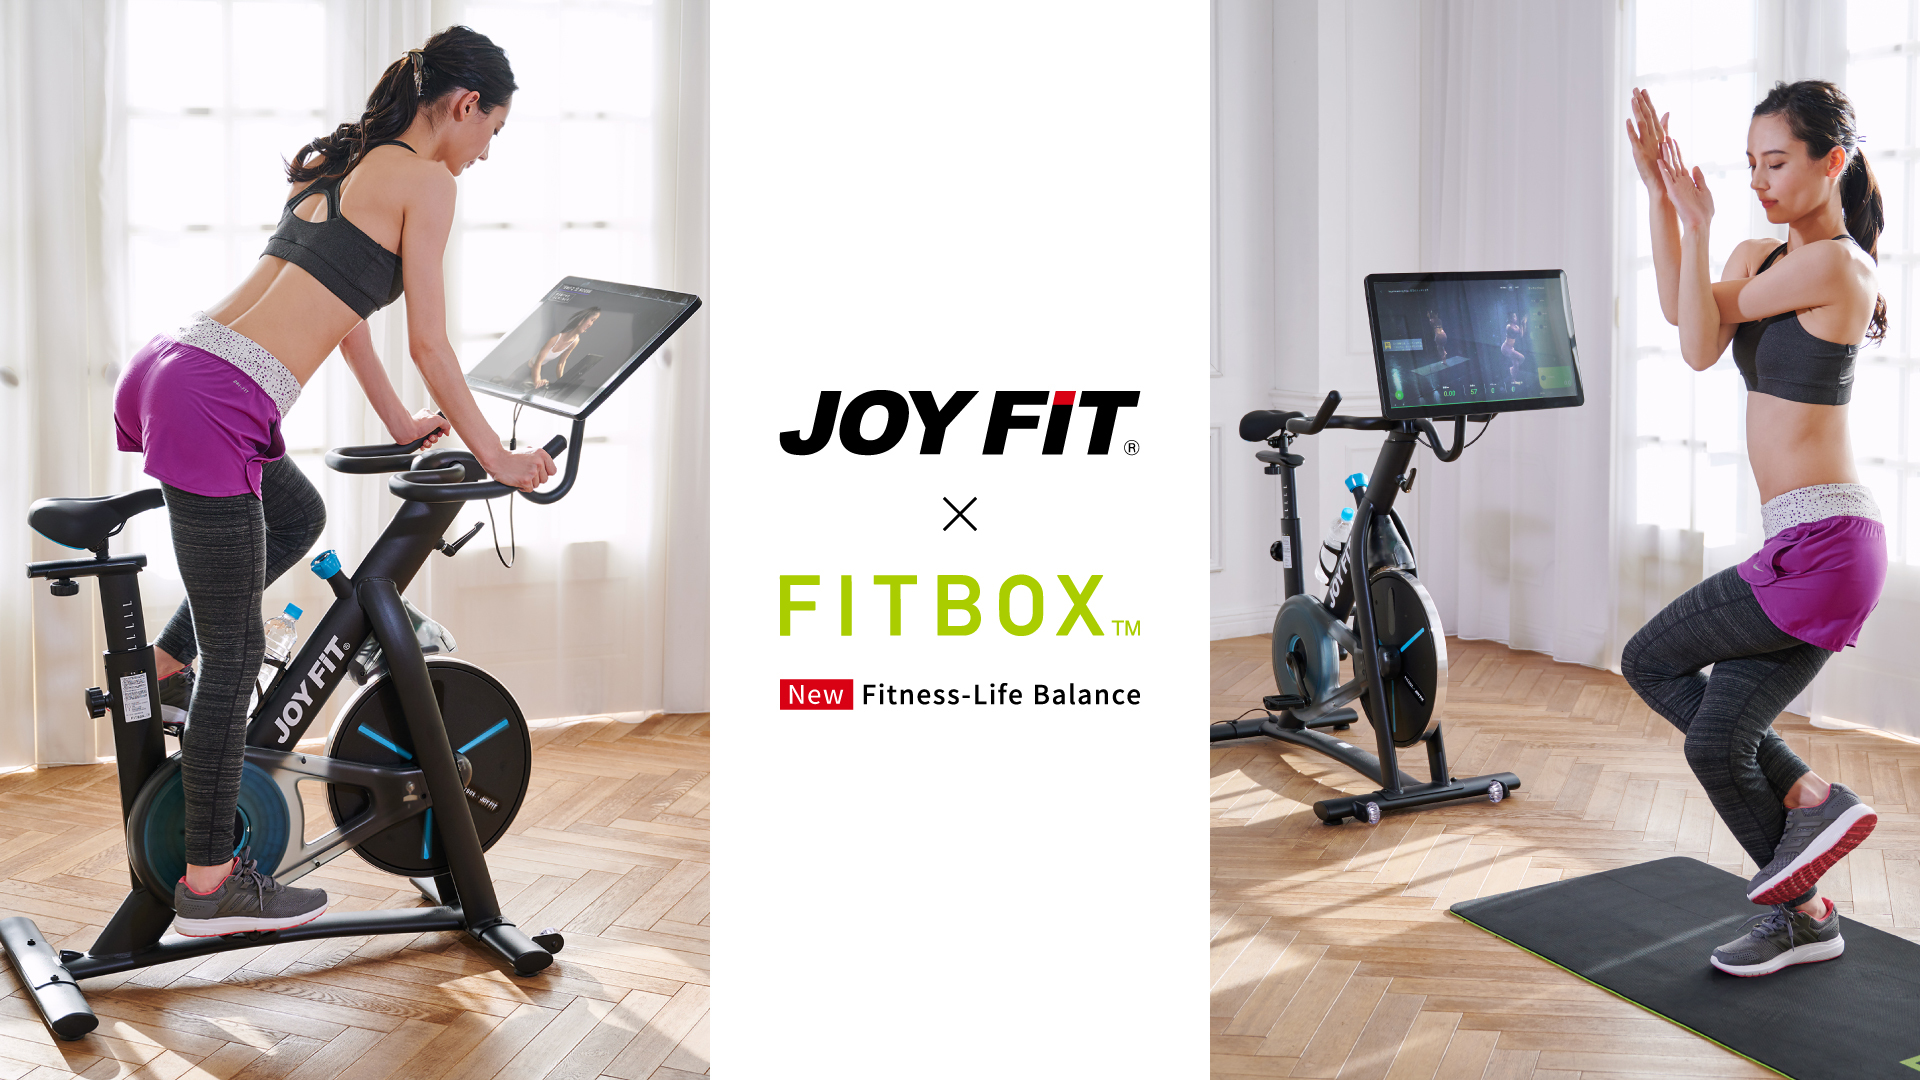 FItbox pro joyfitコラボモデル